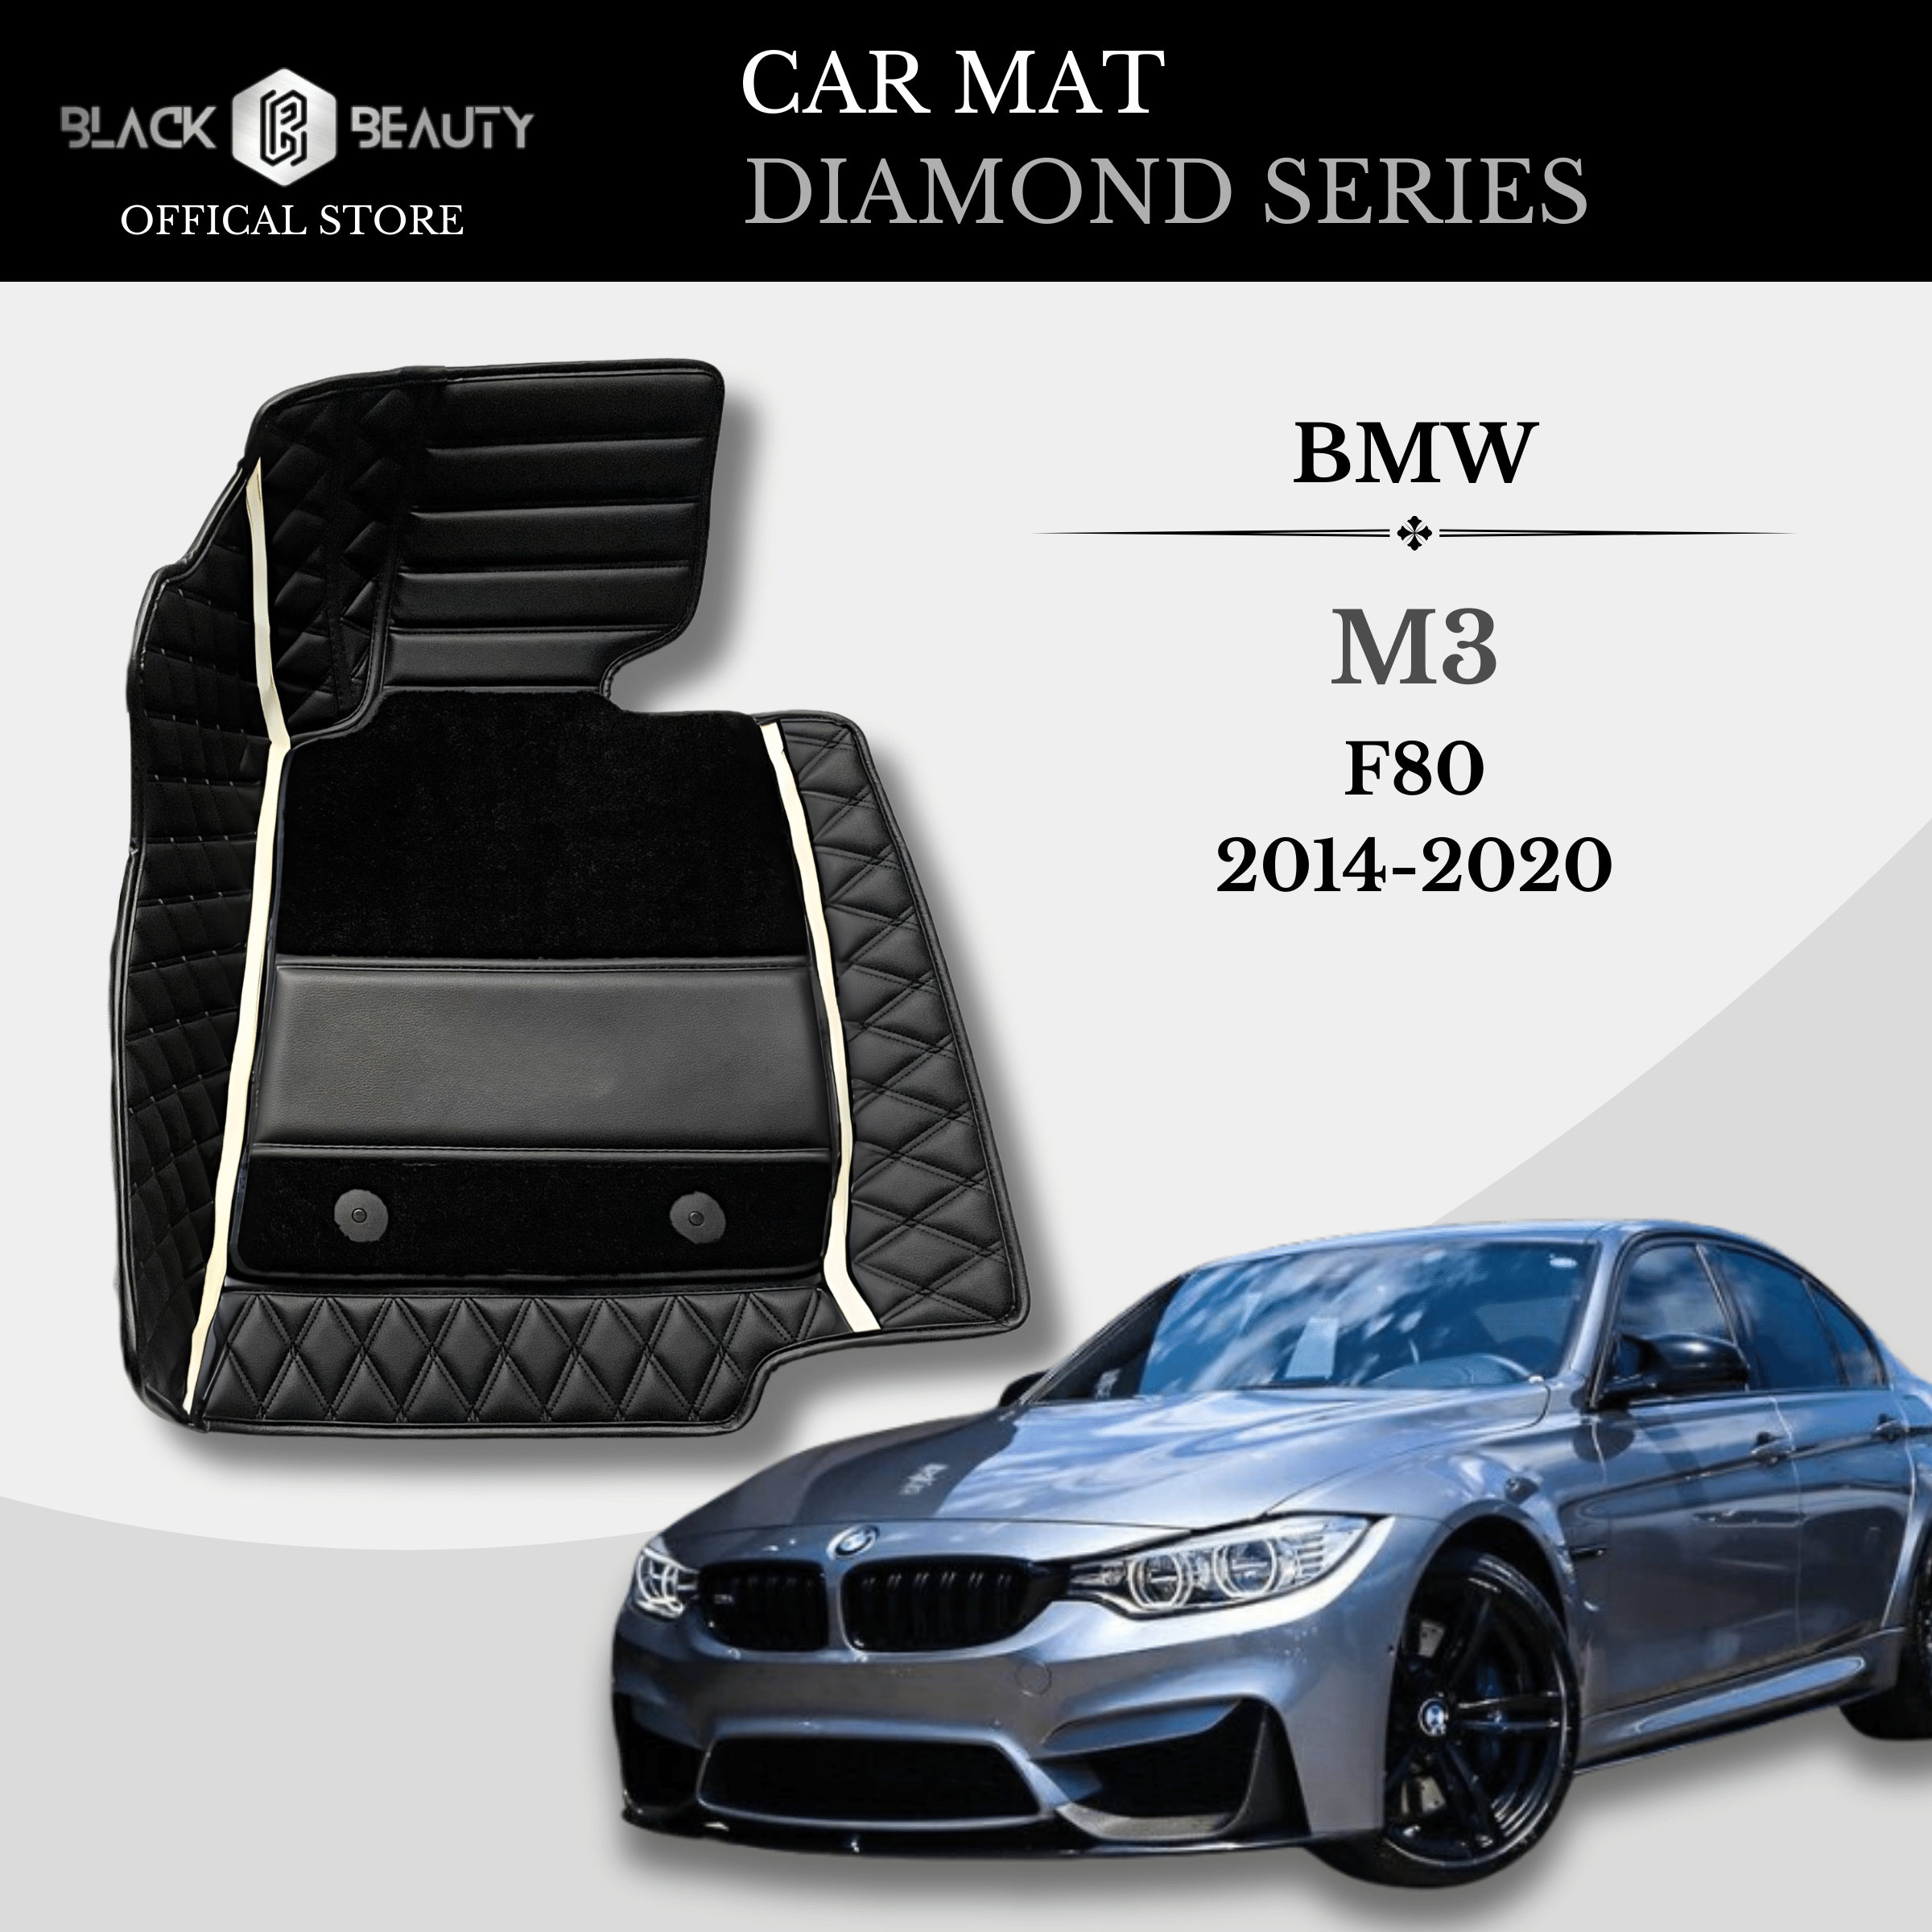 BMW M3 F80 (2014-2020) - Diamond Series Car Mat